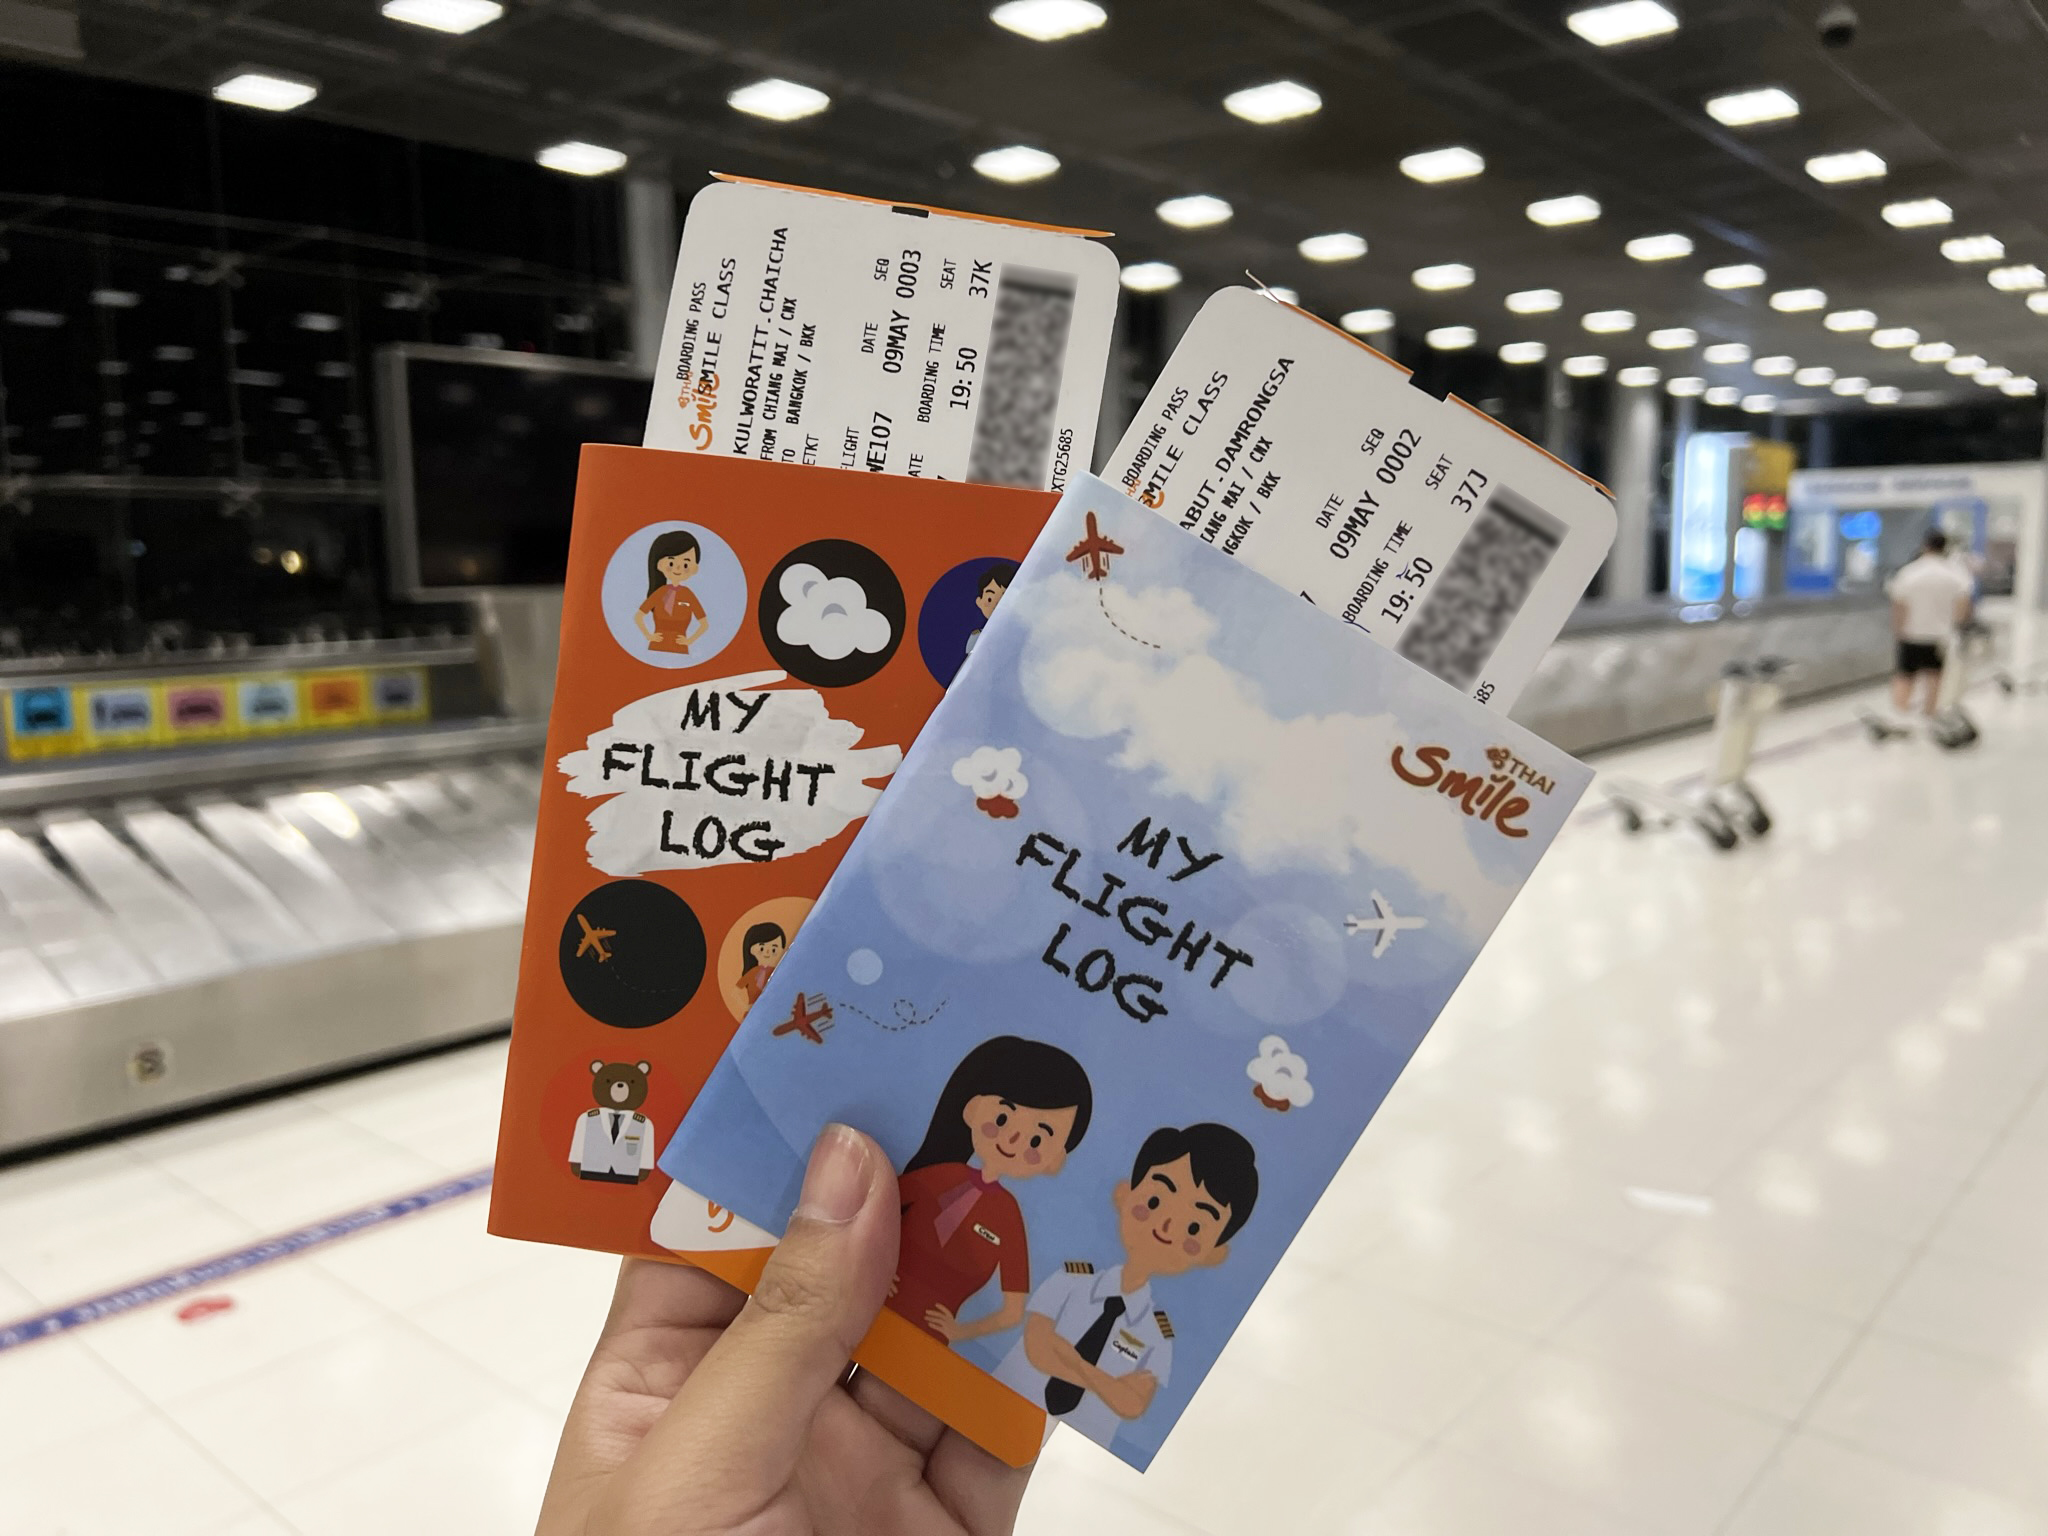 [รีวิว] My Flight Log สมุดบันทึกการเดินทางสุดเก๋ สะสมตราประทับและลายเซ็นของนักบินไทยสมายล์